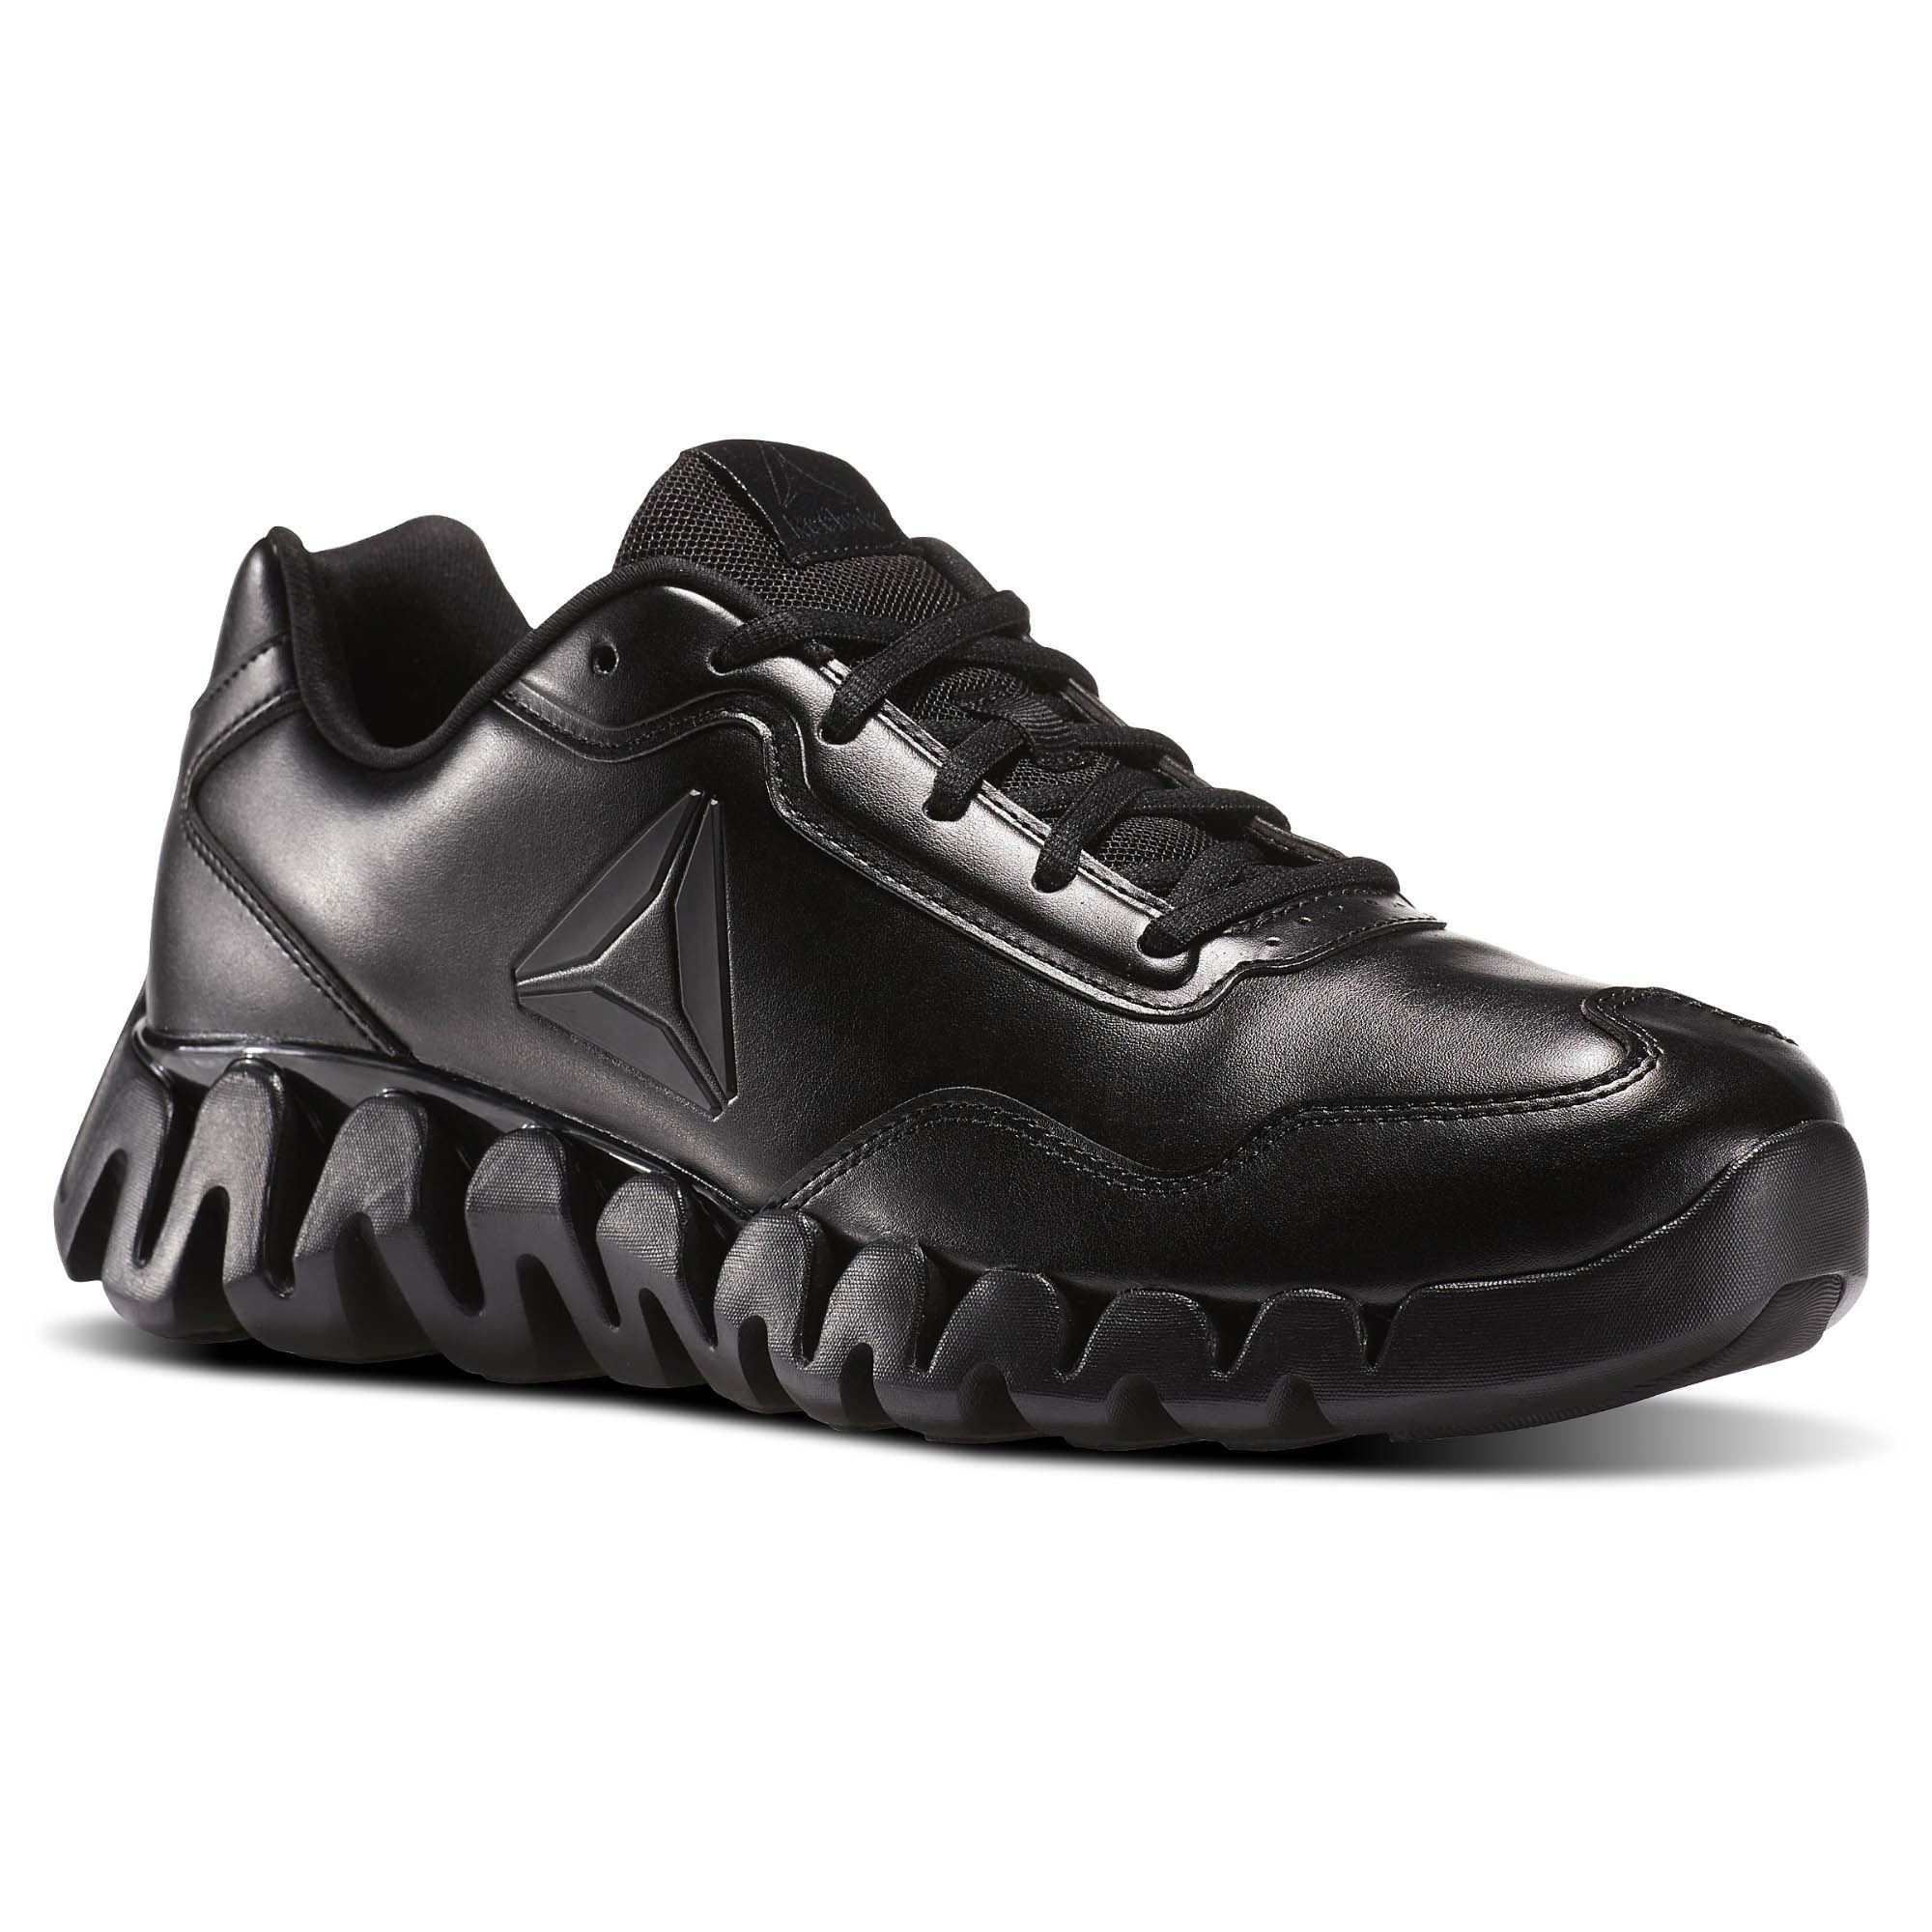 Reebok Zig Pulse-Le Men's Shoes Black bs7680 (9 D(M) US)